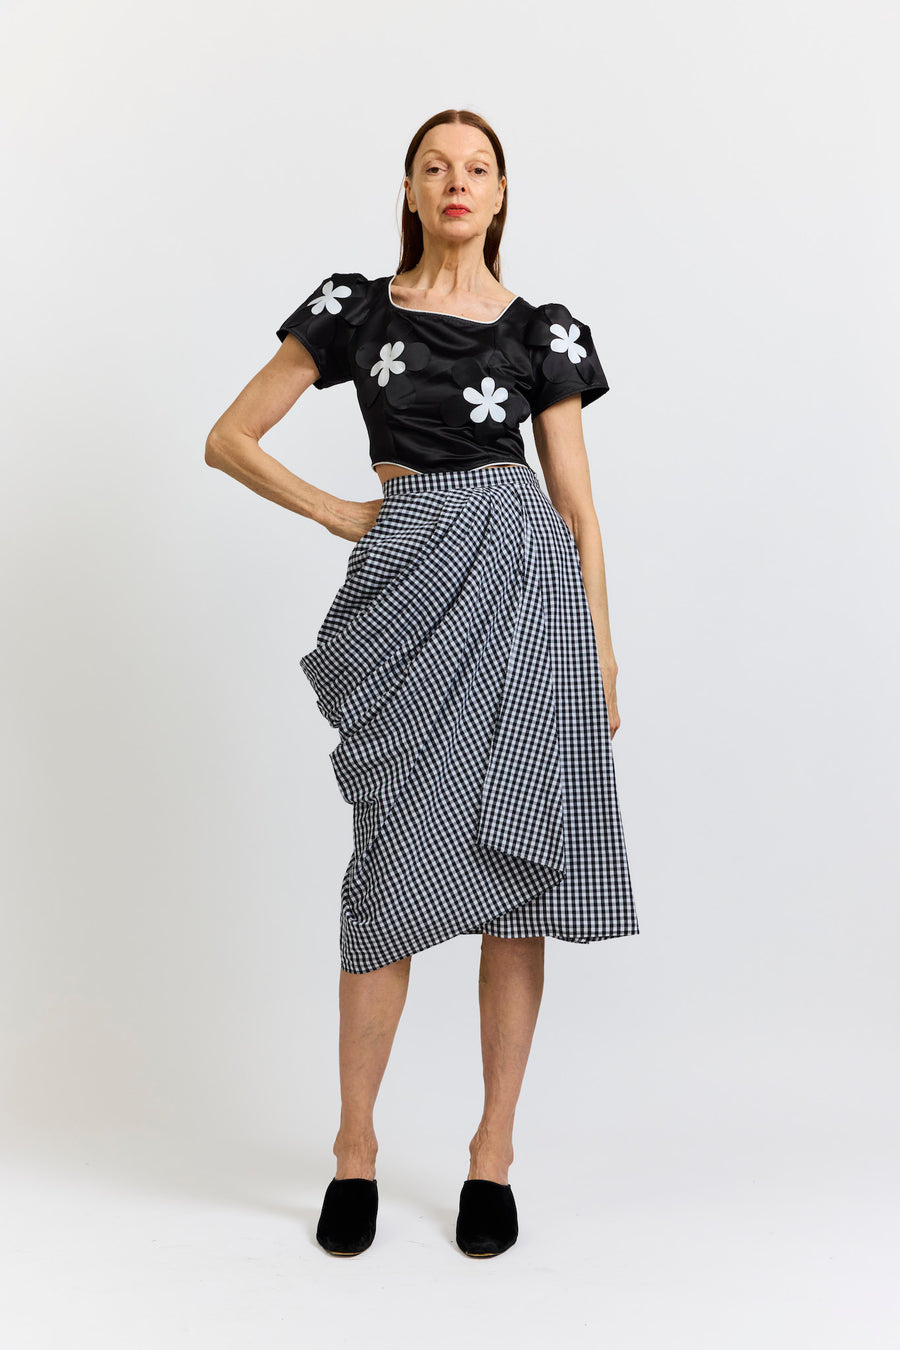 BATSHEVA - Vivienne Skirt in Black and White Gingham Cotton